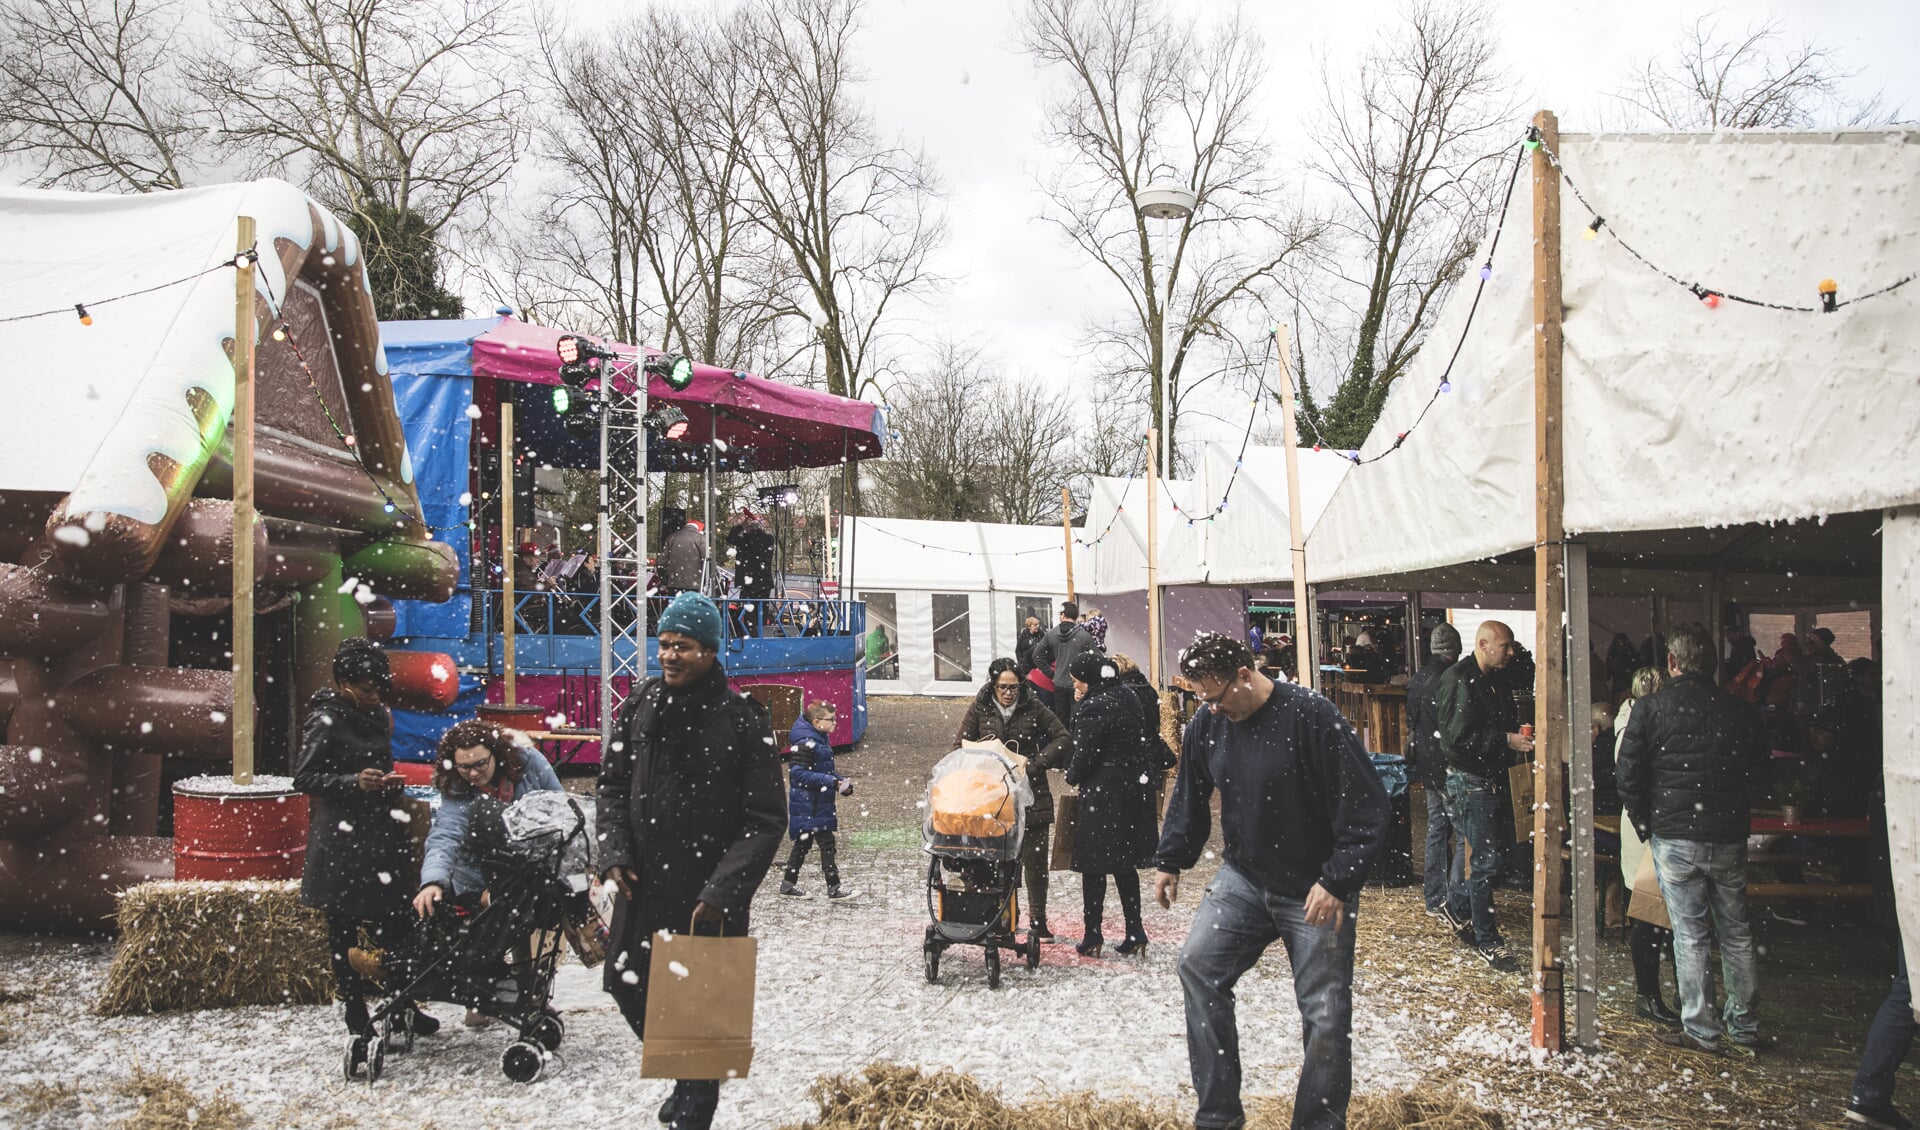 De door Stichting Perspektief georganiseerde kerstmarkt was een groot succes. 